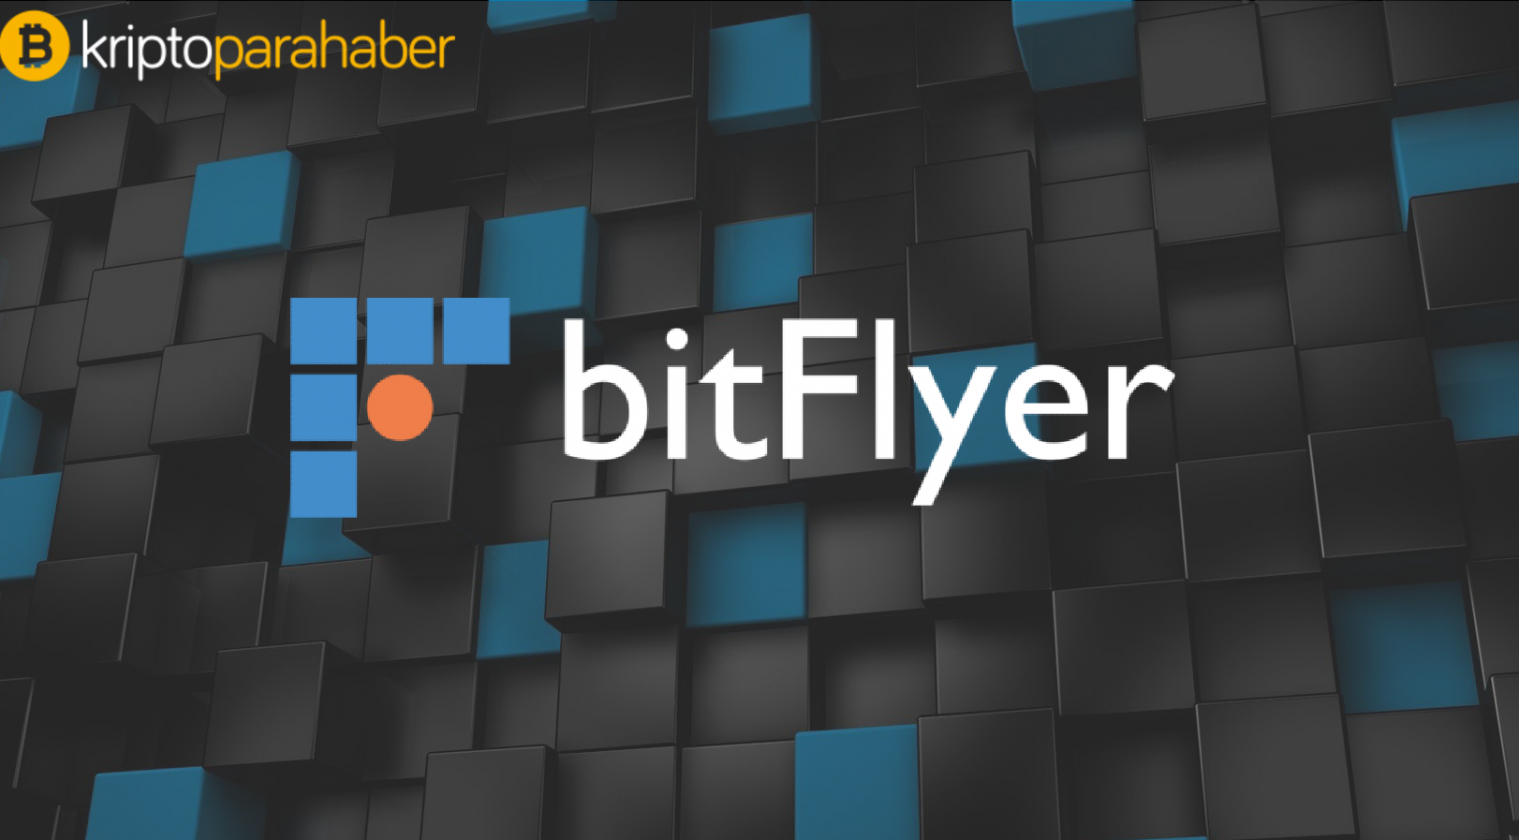 BitFlyer kayıtlı kullanıcı sayısıyla Bitcoin